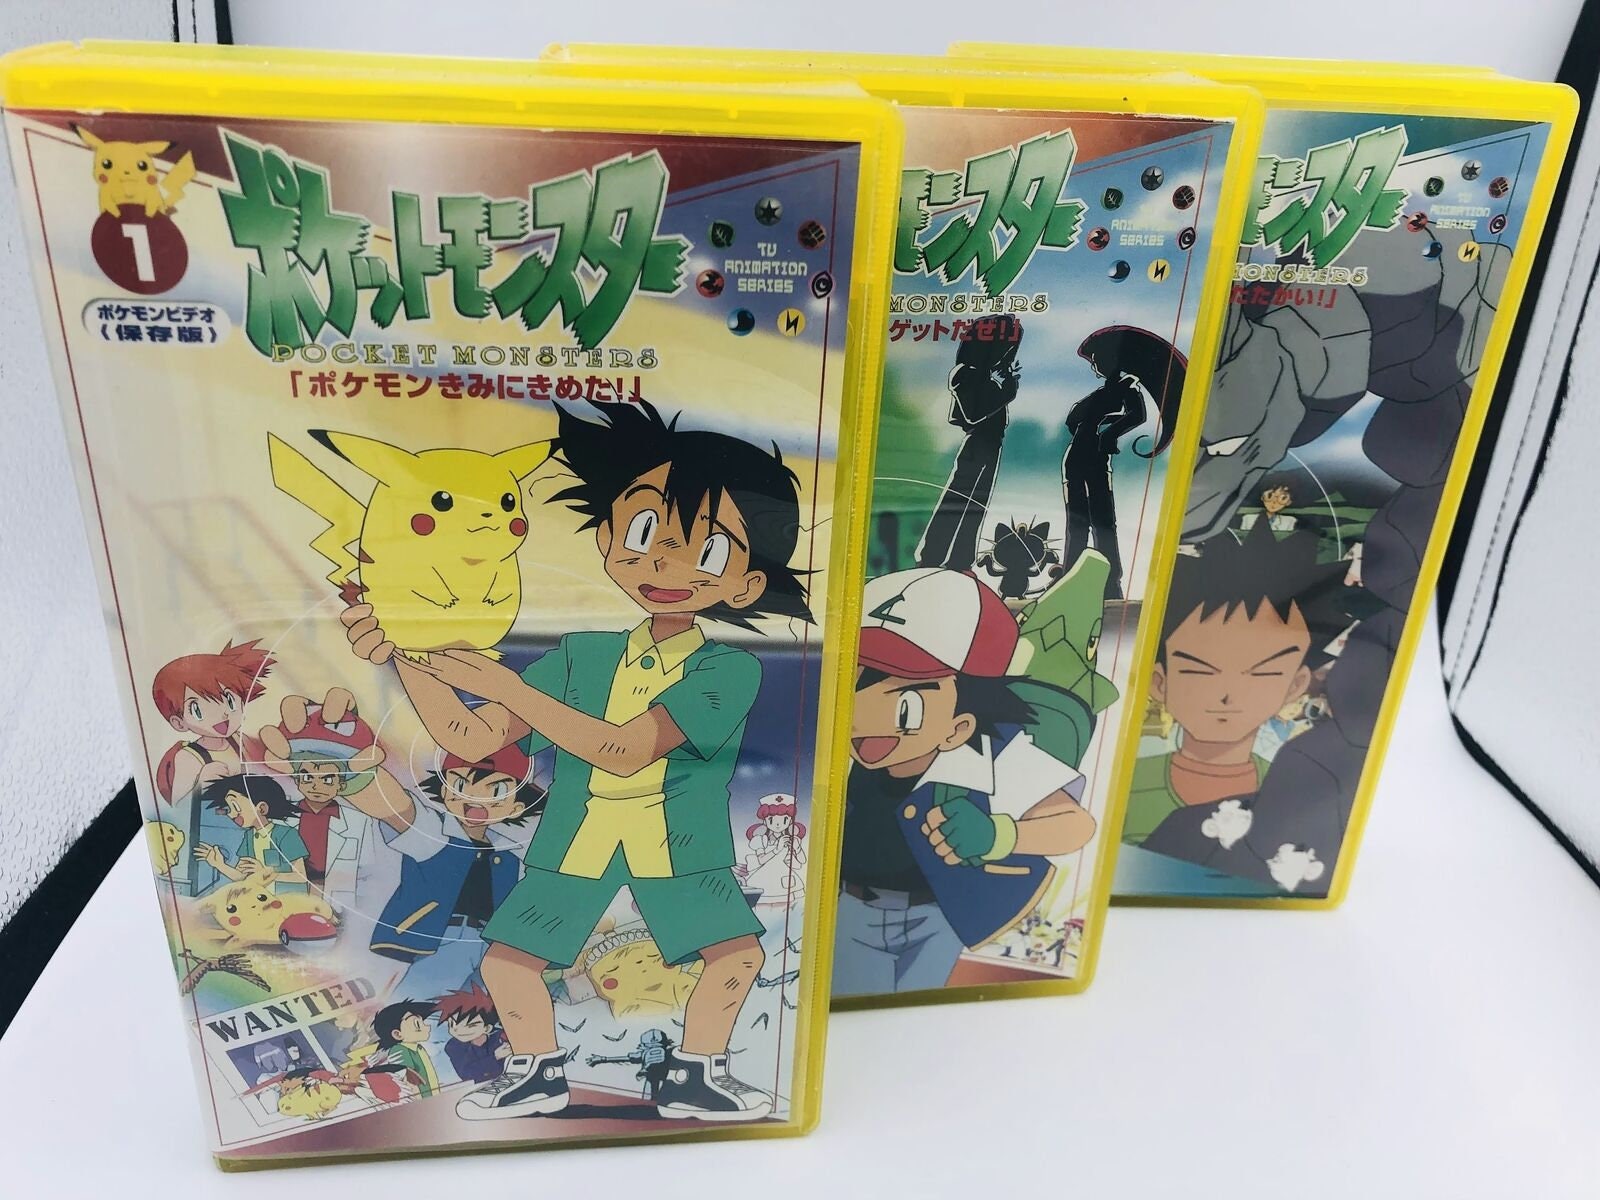 Pocket Monster Revelation Lugia VHS Video Japan Anime Pokemon